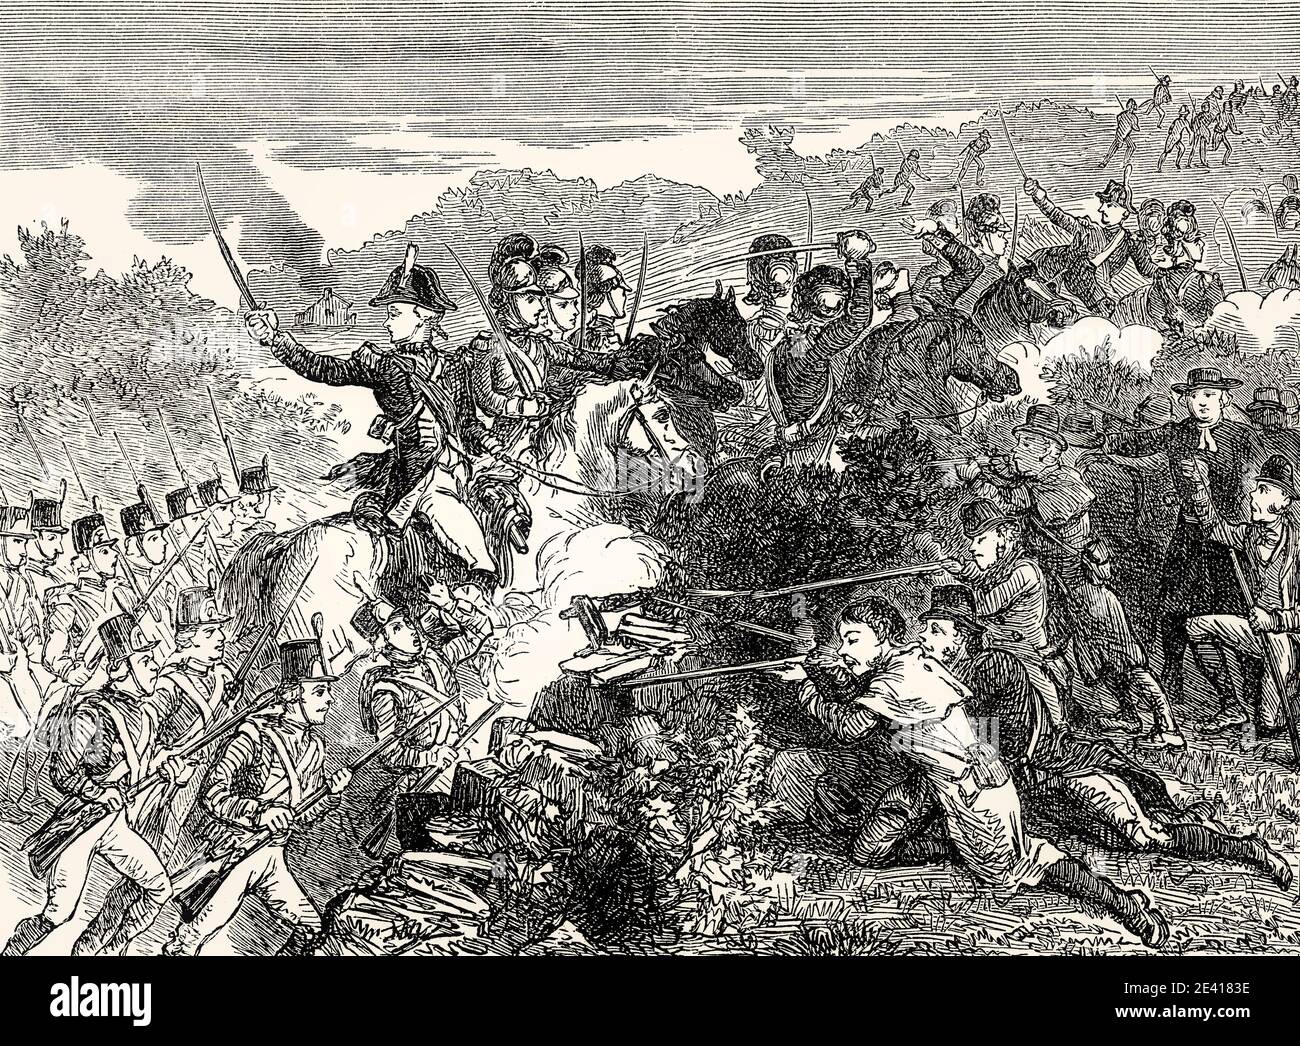 The Wexford Rellion, Angriff der Britischen Armee auf die Wexford Rebellen, 1798, Irischer Aufstand von 1798, von britischen Schlachten auf Land und See, von James Grant Stockfoto